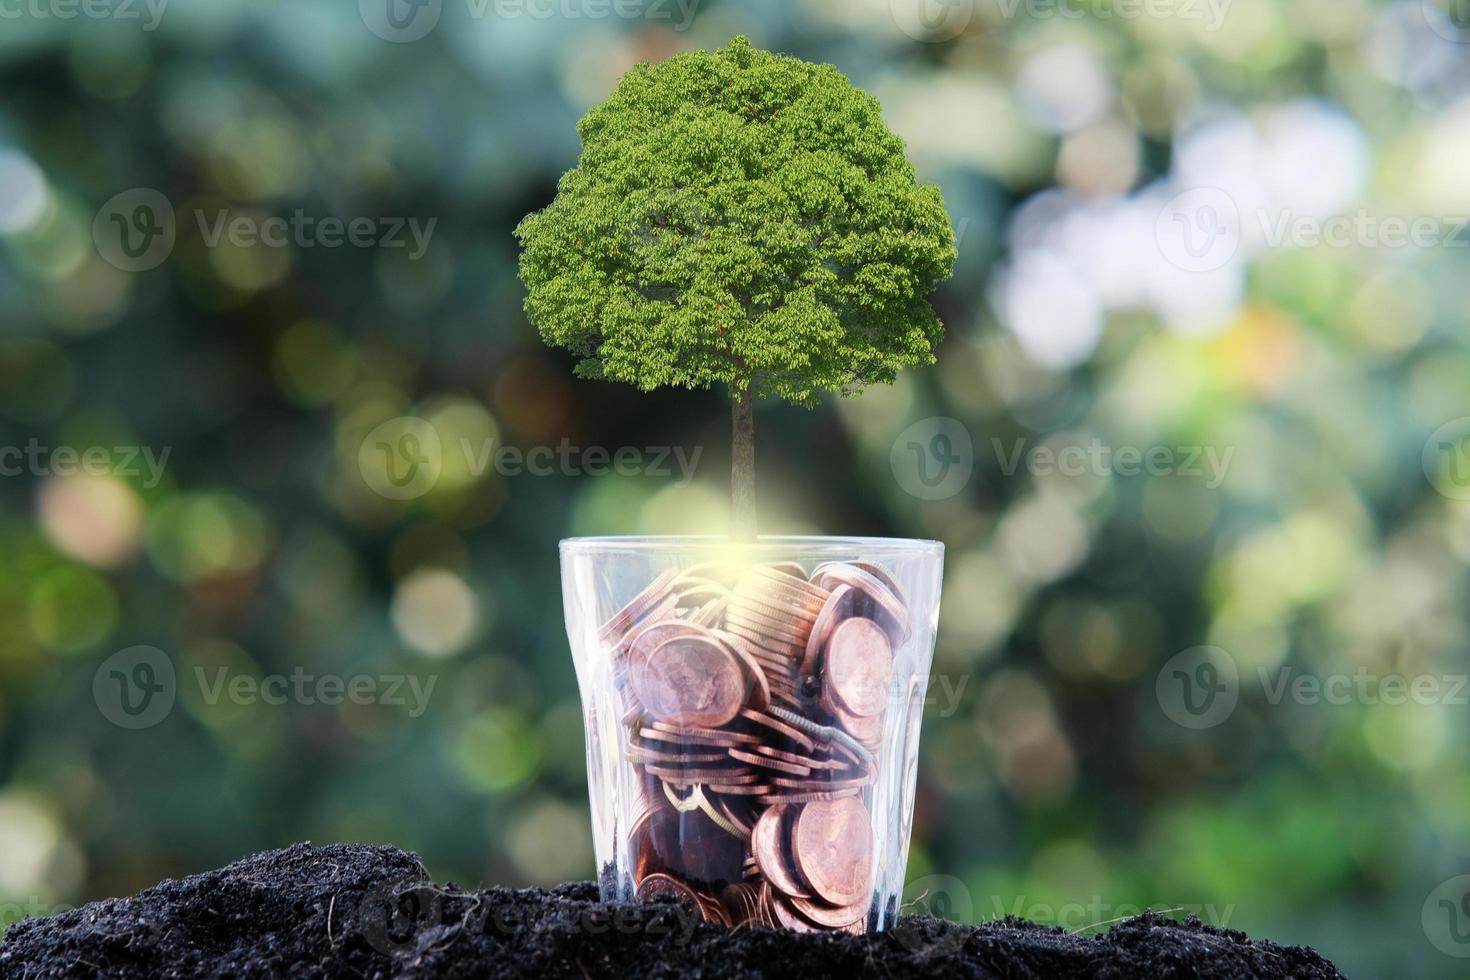 Baum, der von einem Baum wächst, Geschäftswachstumskonzept foto